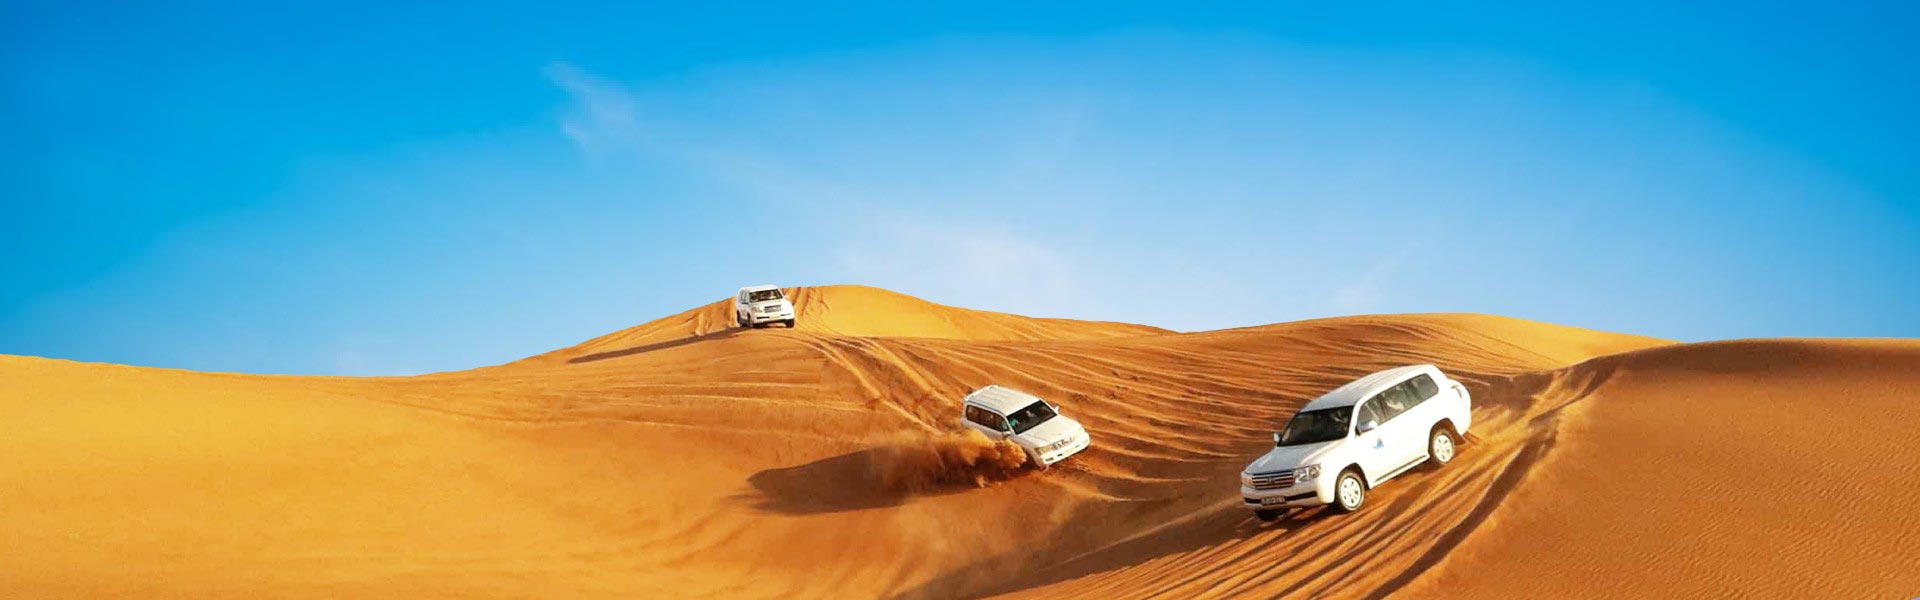 3 mașini albe în deșertul Dubai care duc turiști pentru safari în deșert - Pachet Tur